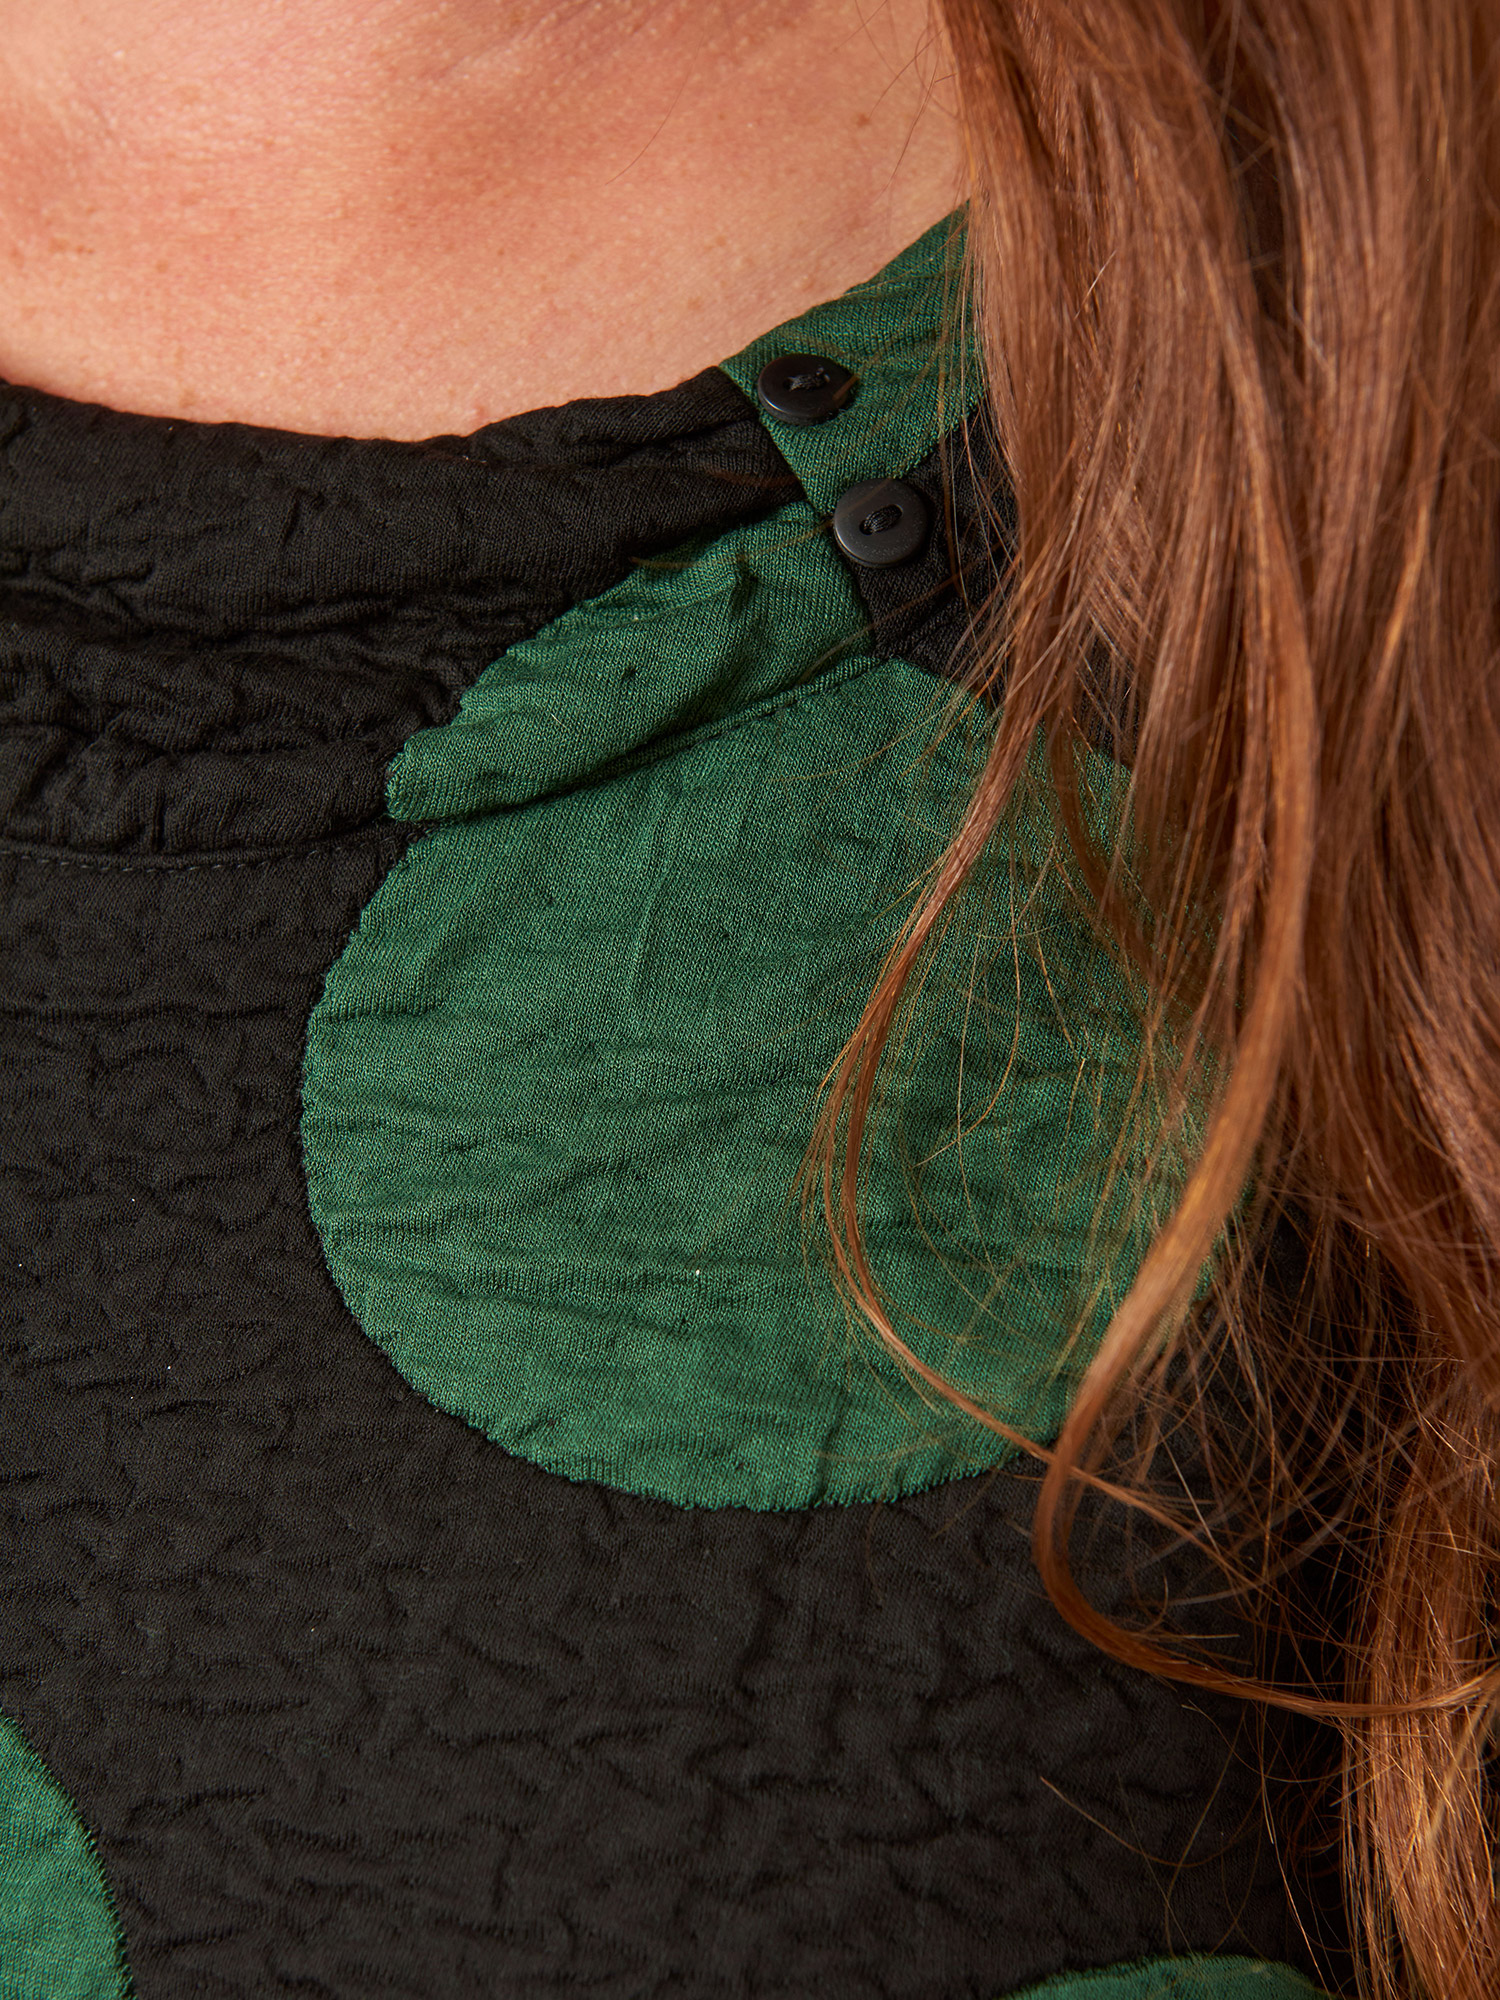 JOLA - Kraftig sort tunika med store grønne prikker fra Pont Neuf